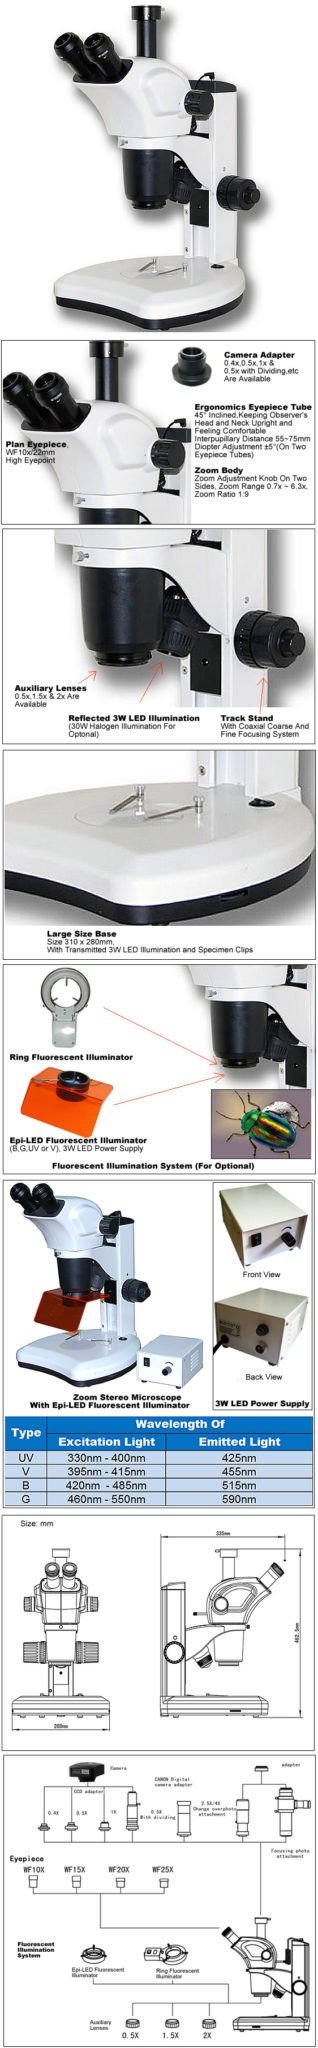 BSM300FLL Epi-Fluorescence LED Stereoscope